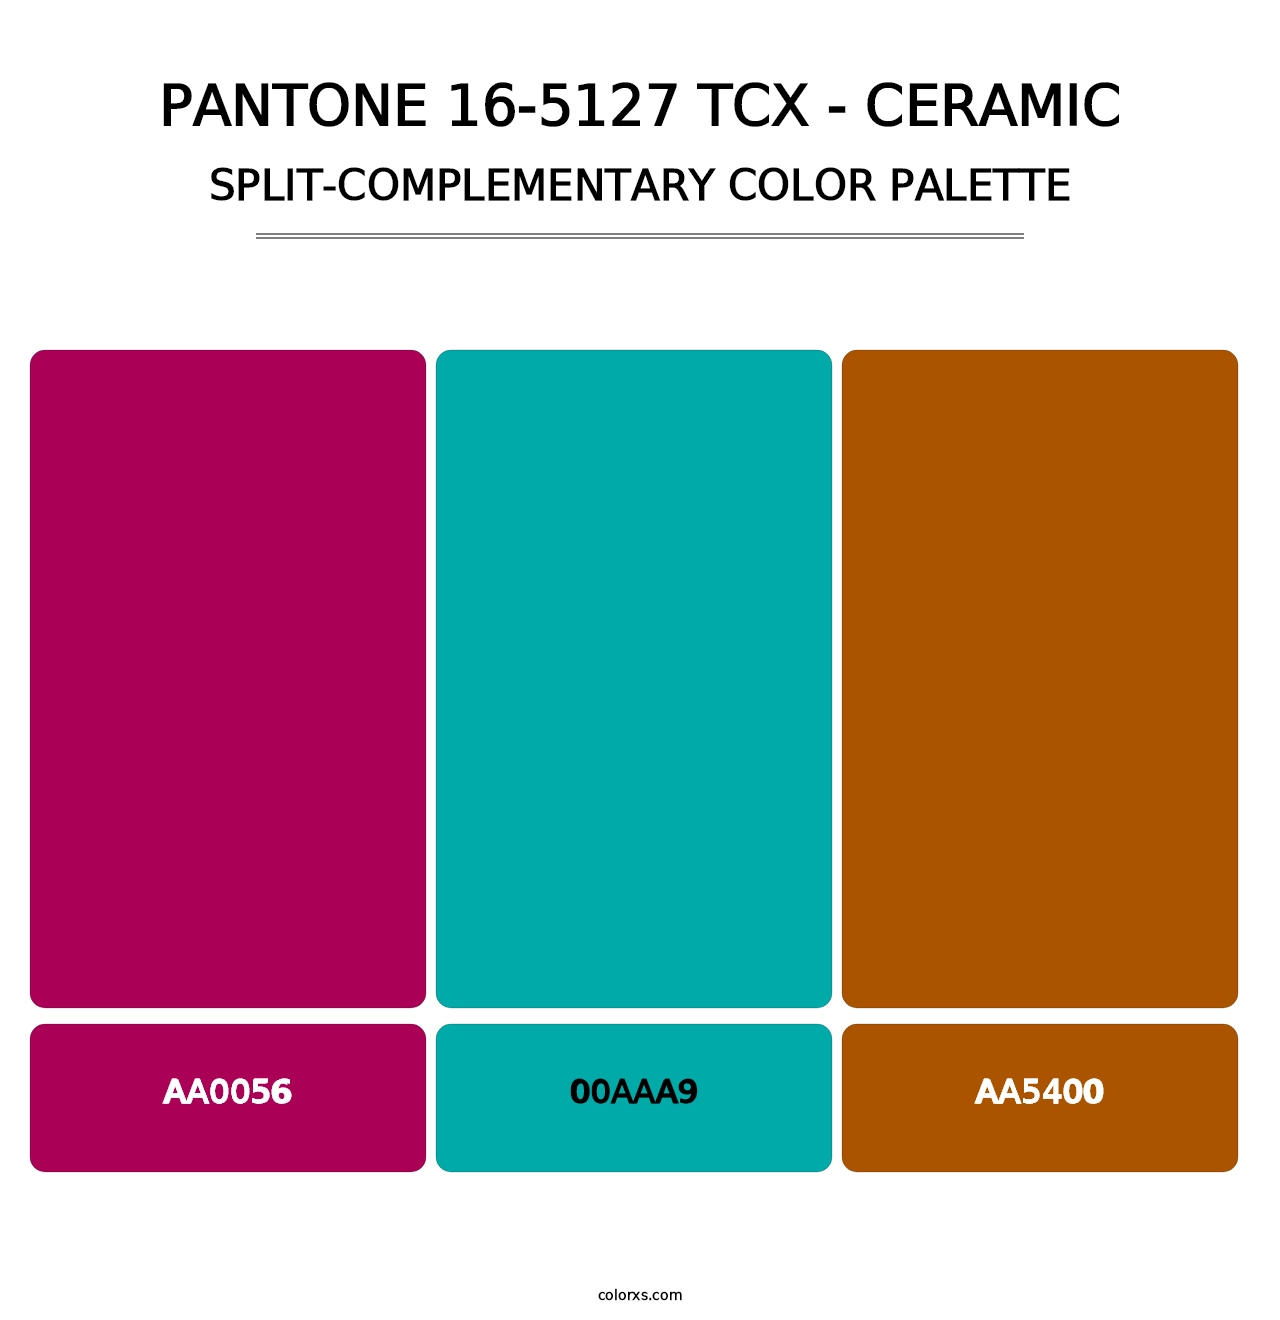 PANTONE 16-5127 TCX - Ceramic - Split-Complementary Color Palette